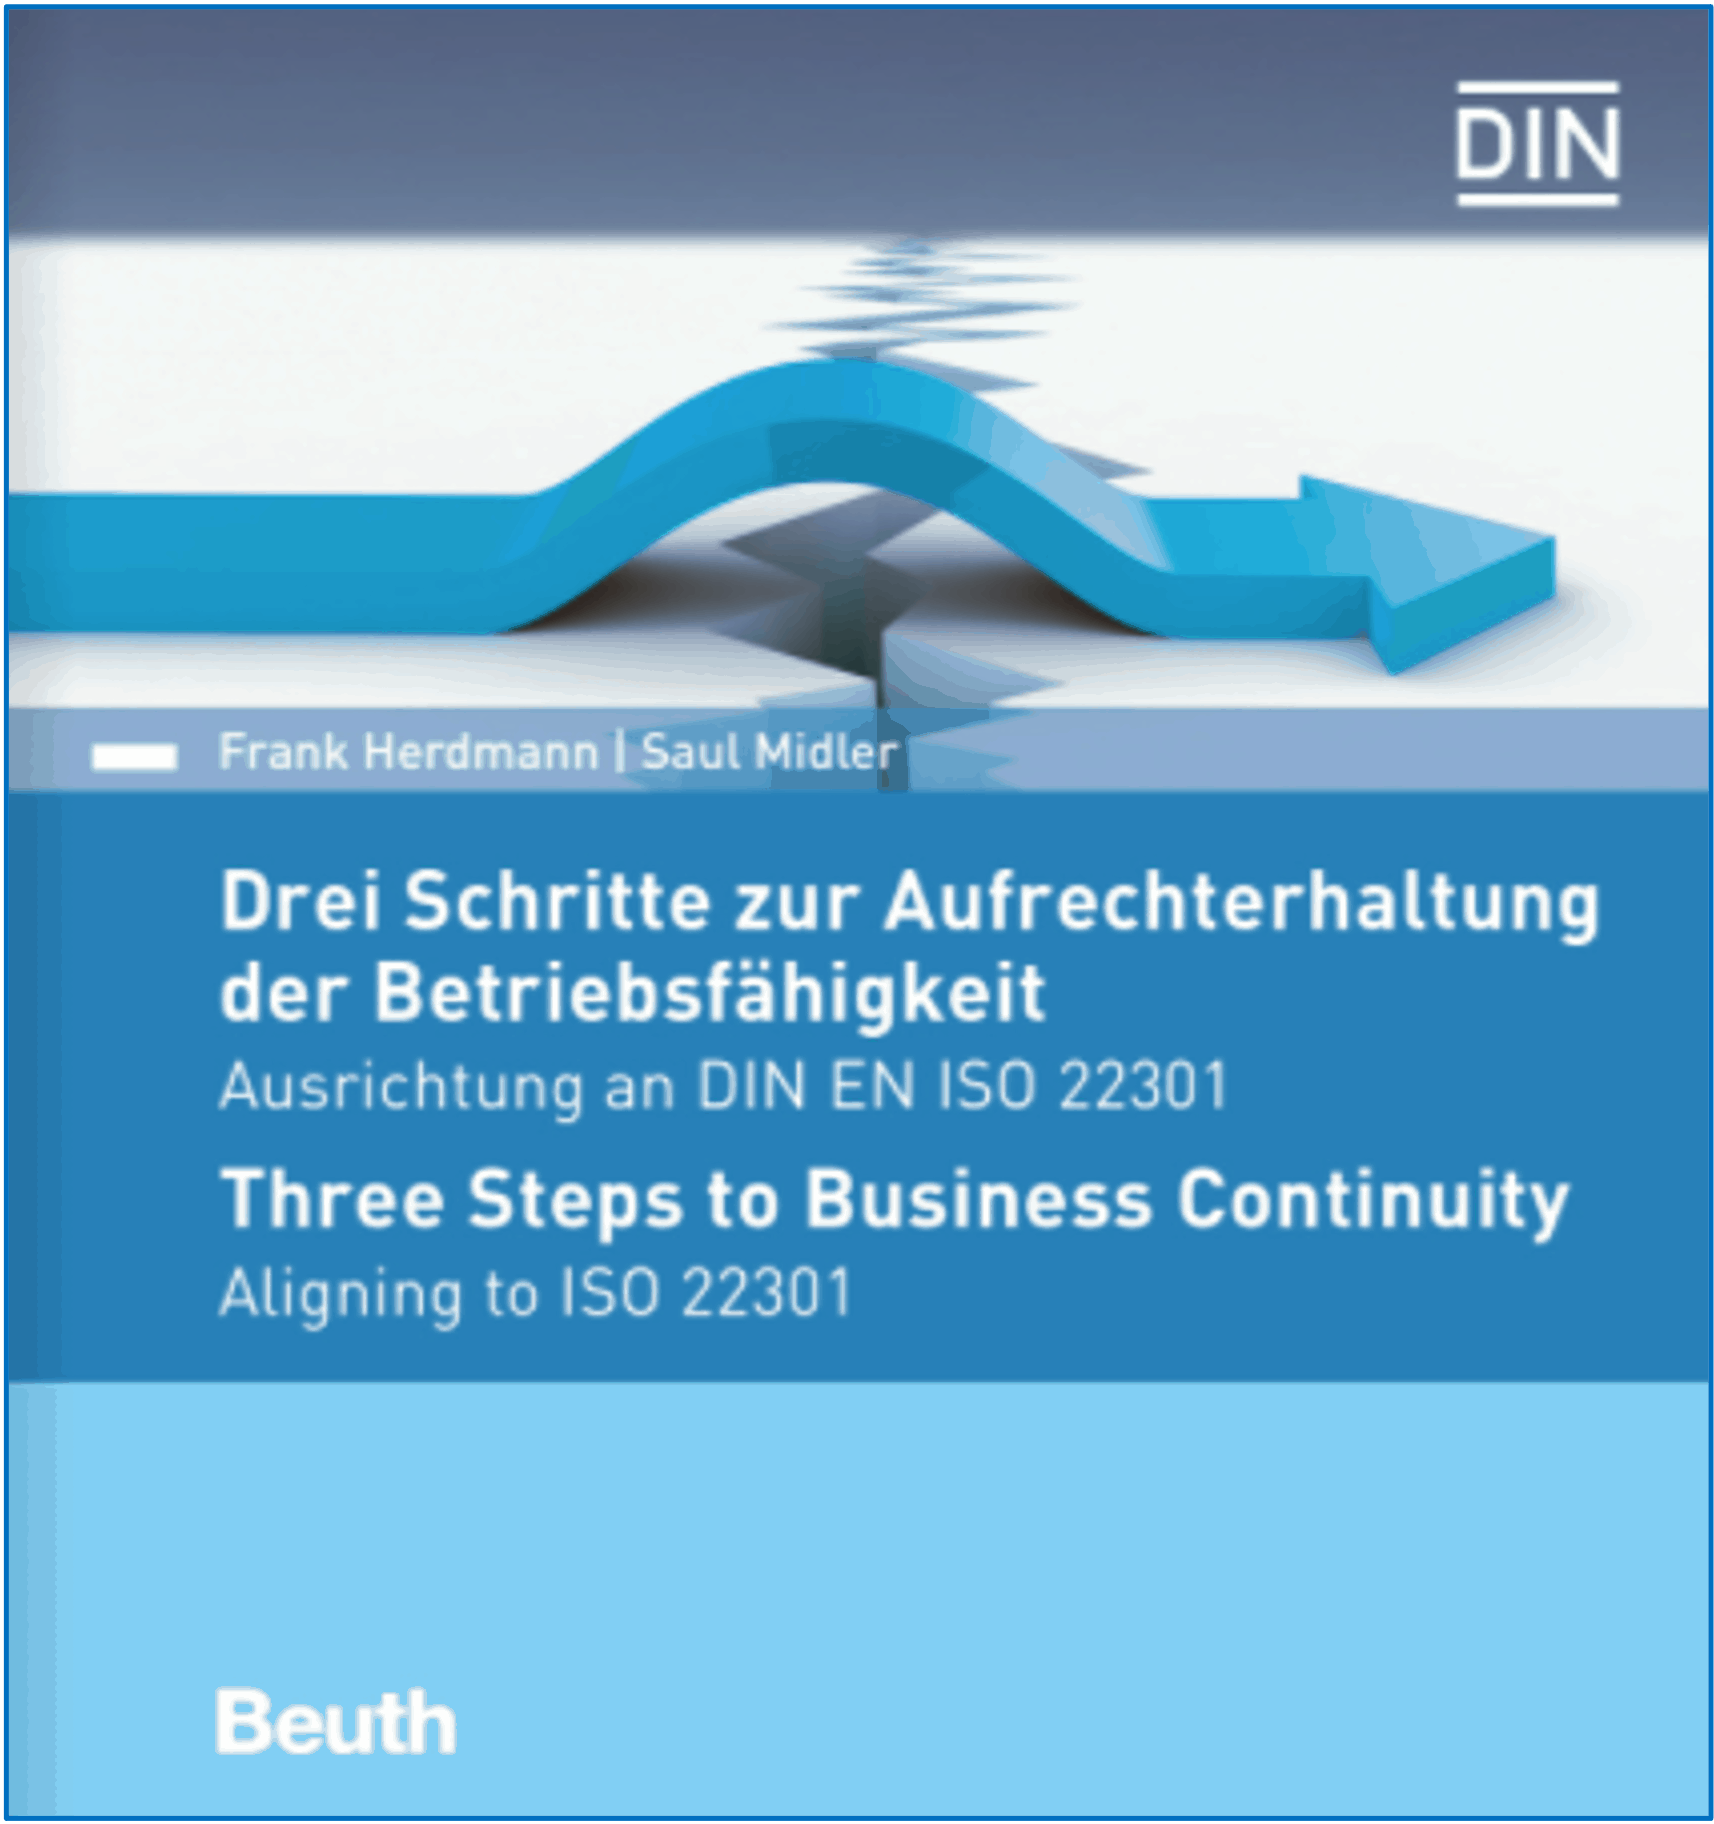 Continuidad de negocio: Three steps to Business Continuity